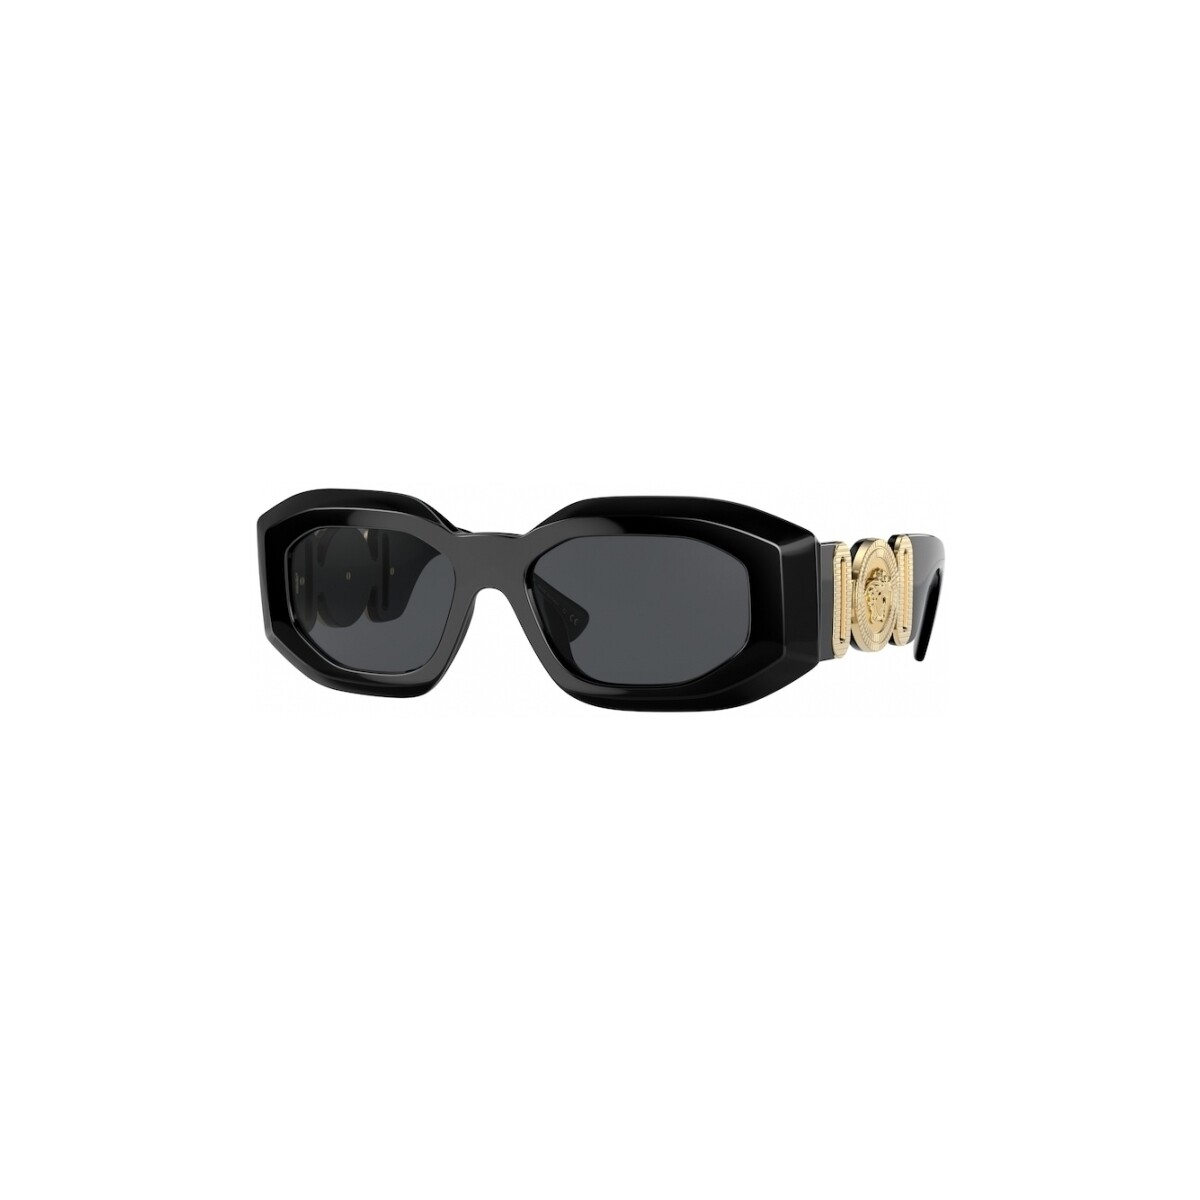 Orologi & Gioielli Occhiali da sole Versace VE4425U Occhiali da sole, Nero/Grigio, 54 mm Nero